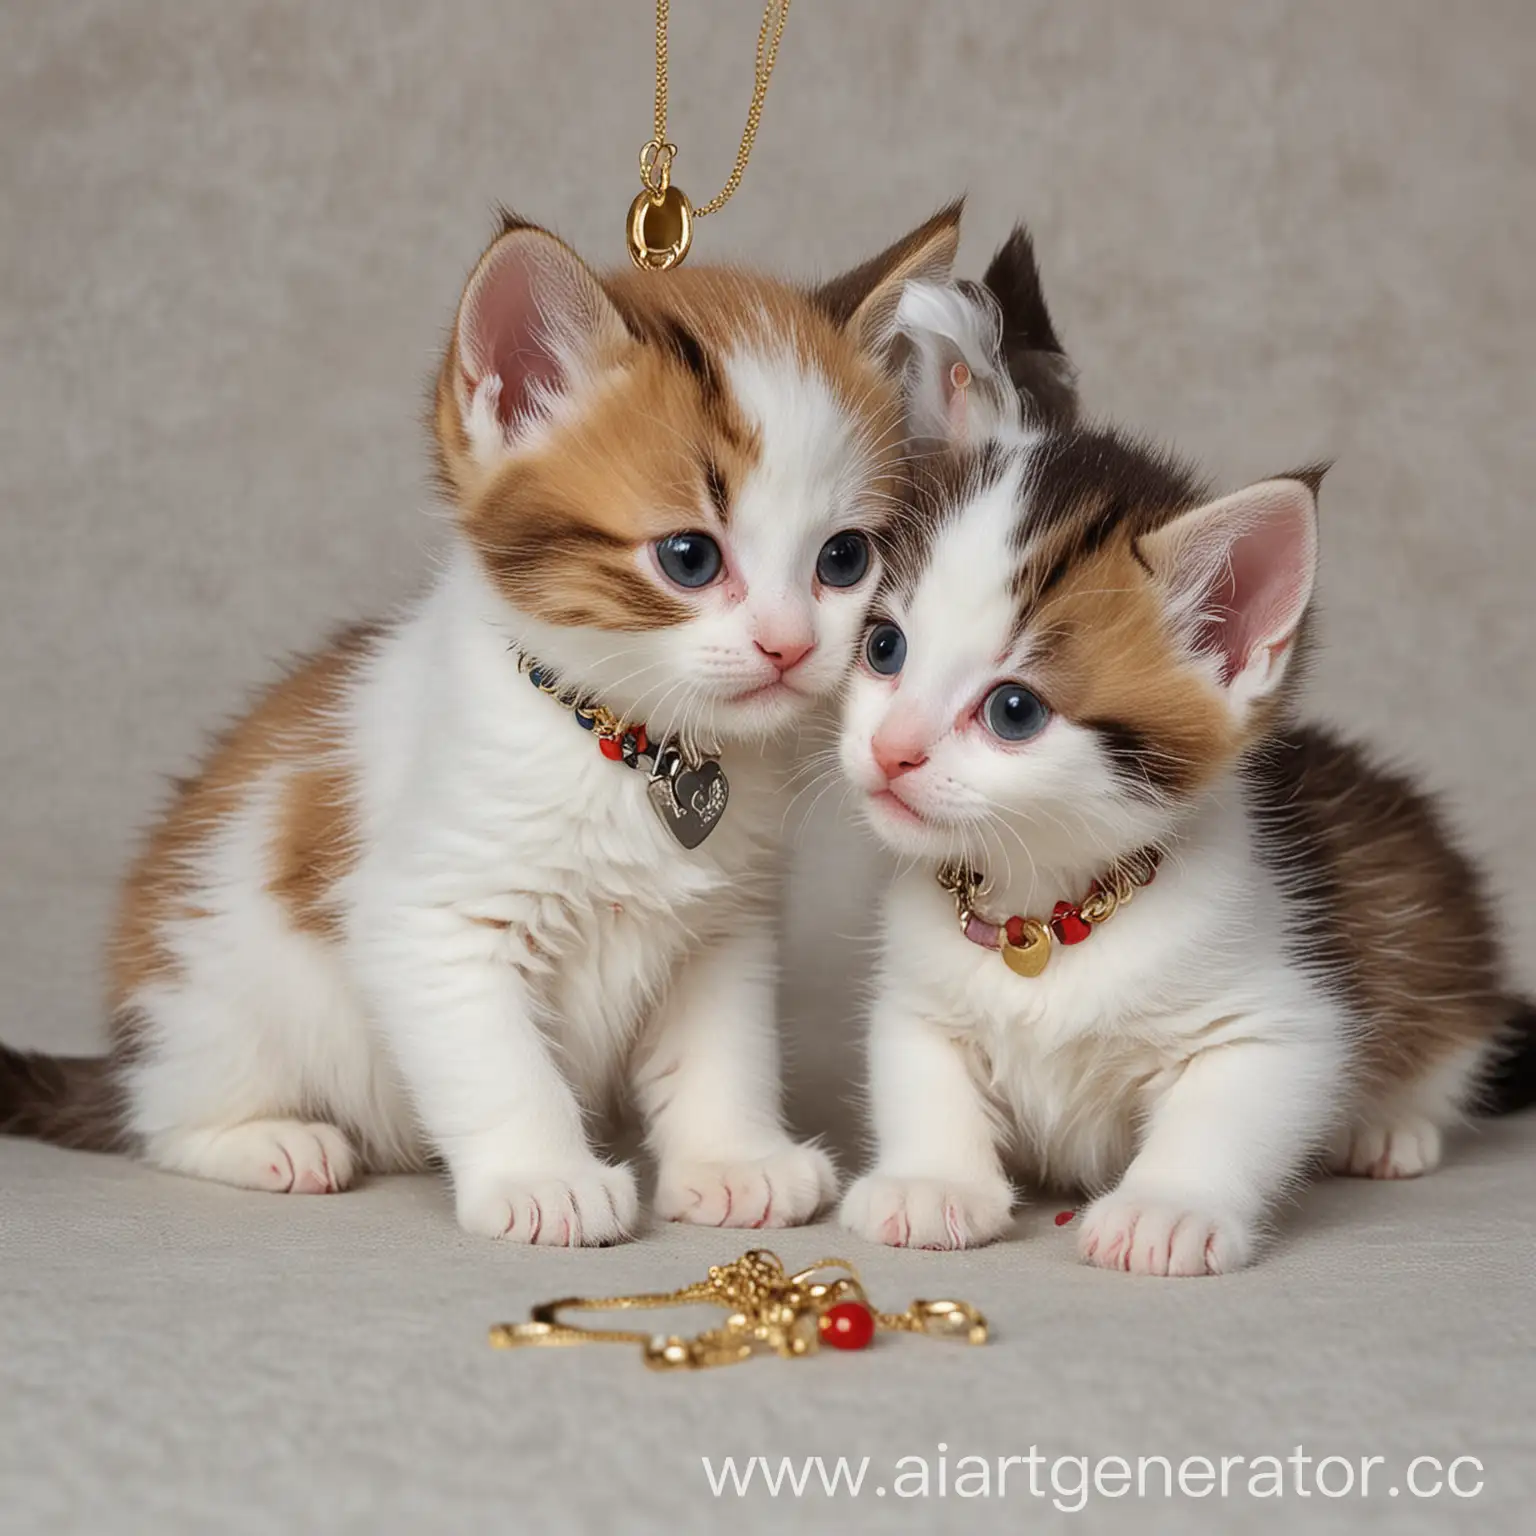 Два трехцветных котенка играют друг с другом. У них есть кулоны. На одном кулоне написано "Ульяна"